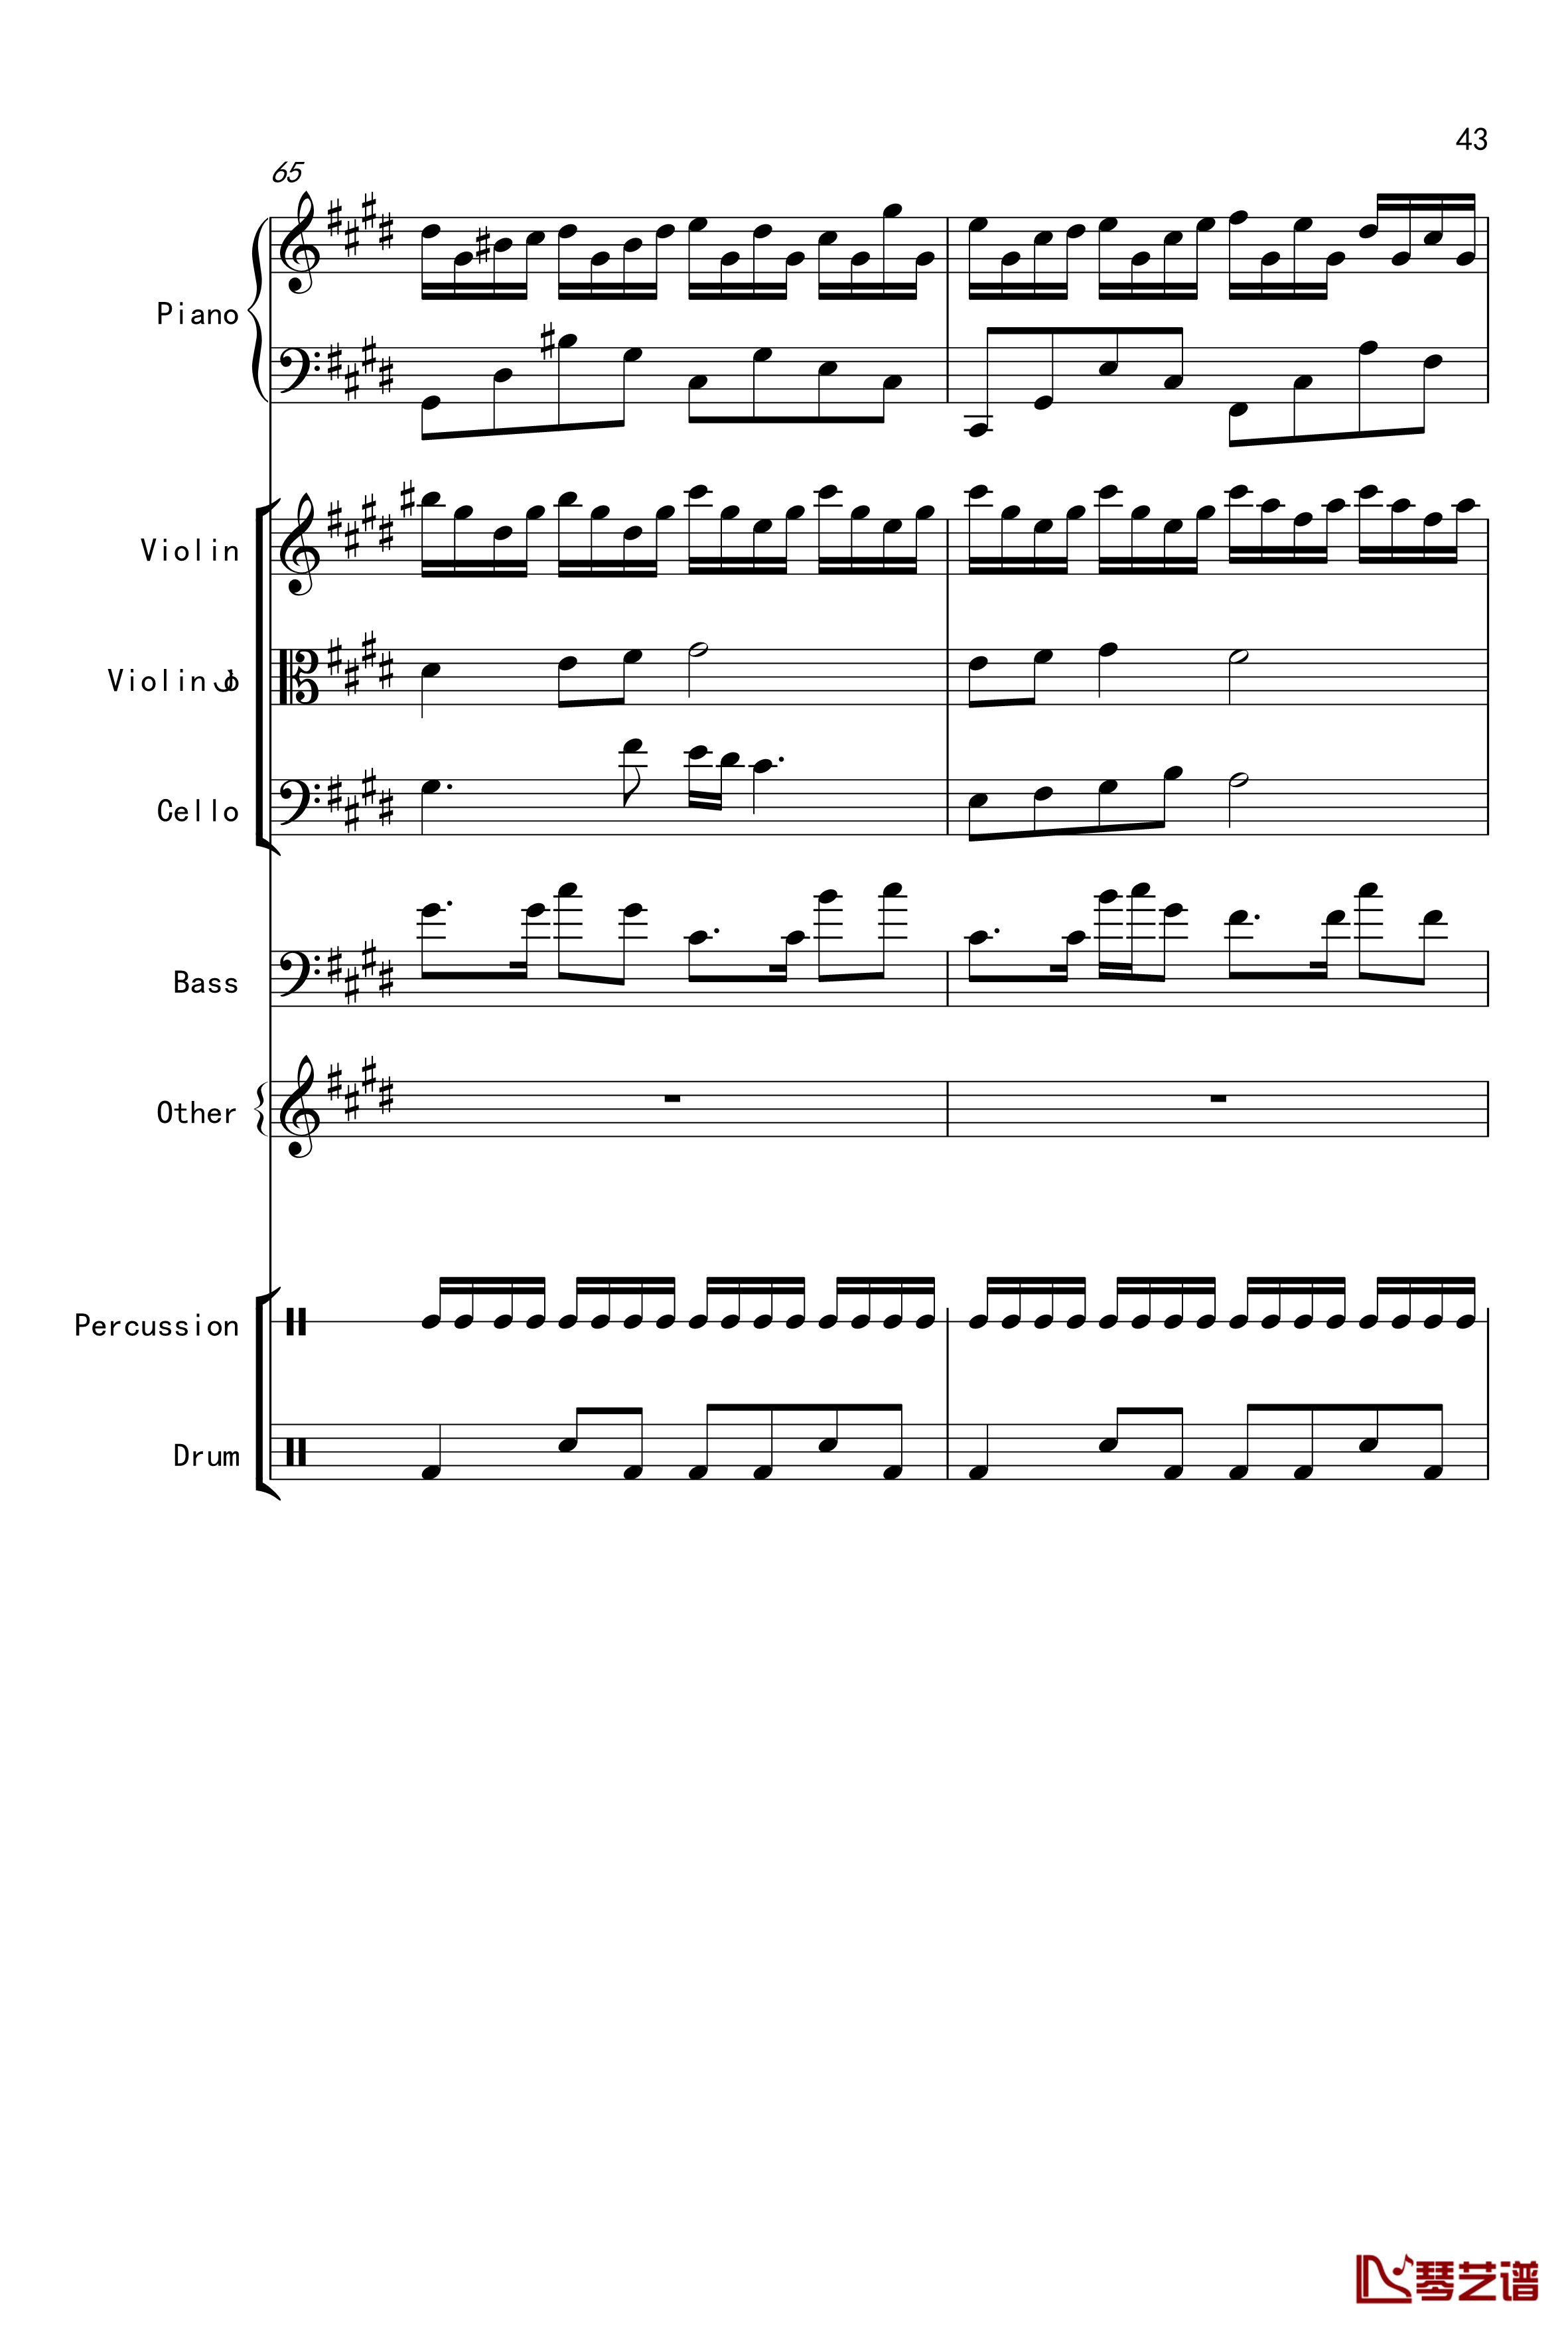 克罗地亚舞曲钢琴谱-Croatian Rhapsody-马克西姆-Maksim·Mrvica43